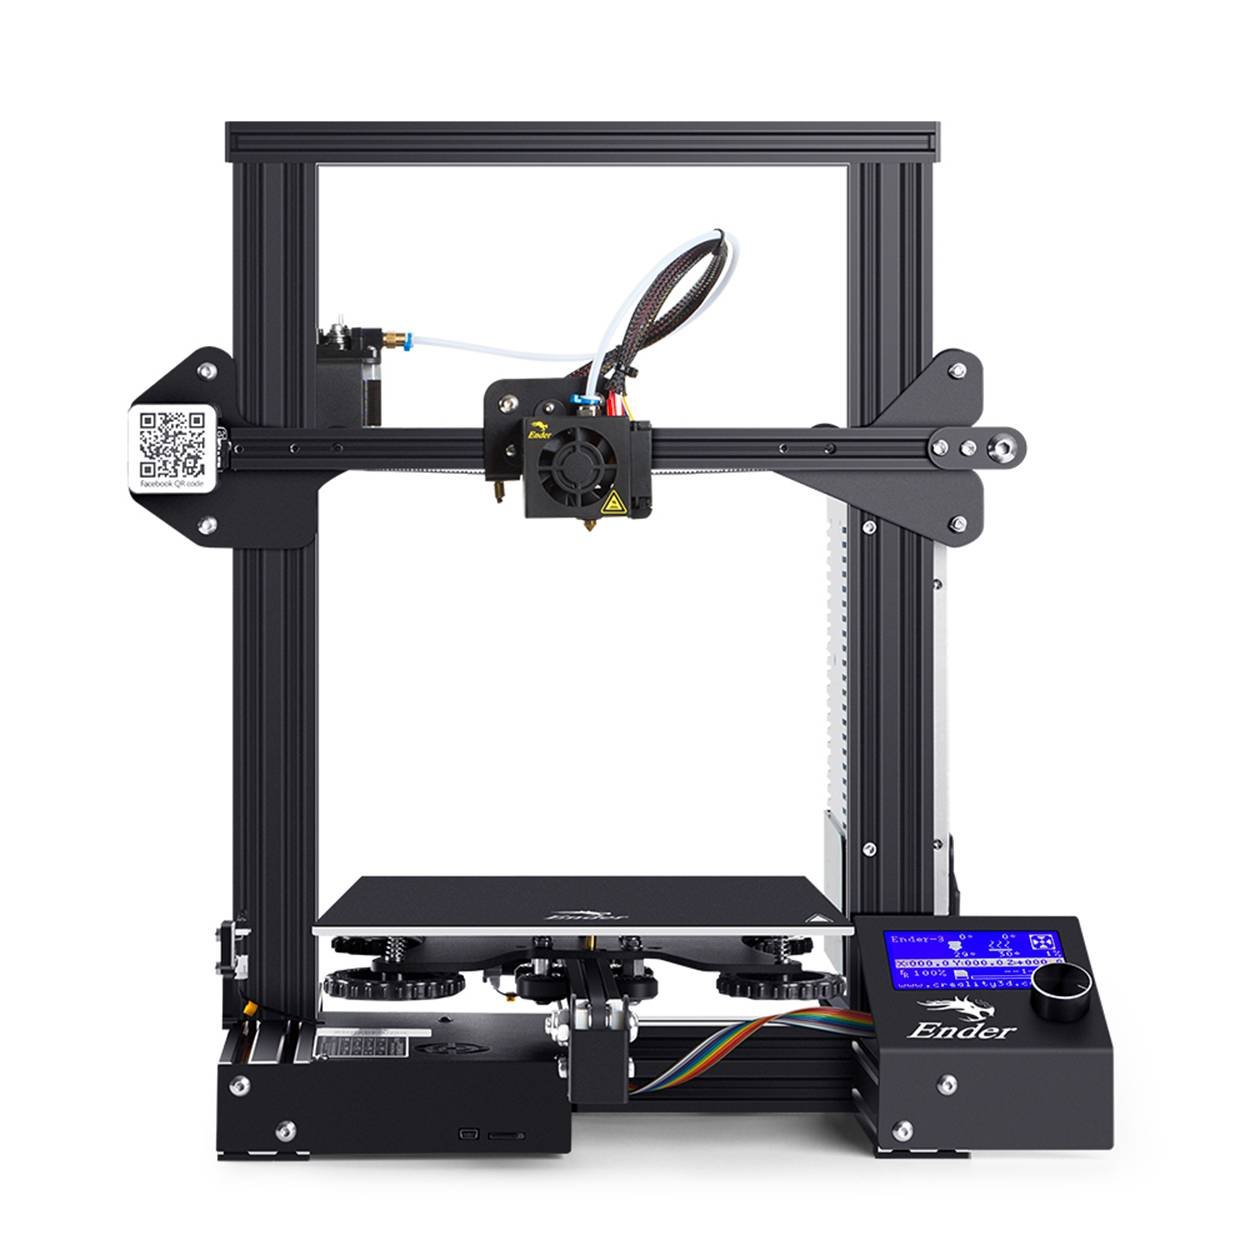 Quelles sont les meilleures marques d'imprimantes 3D ?